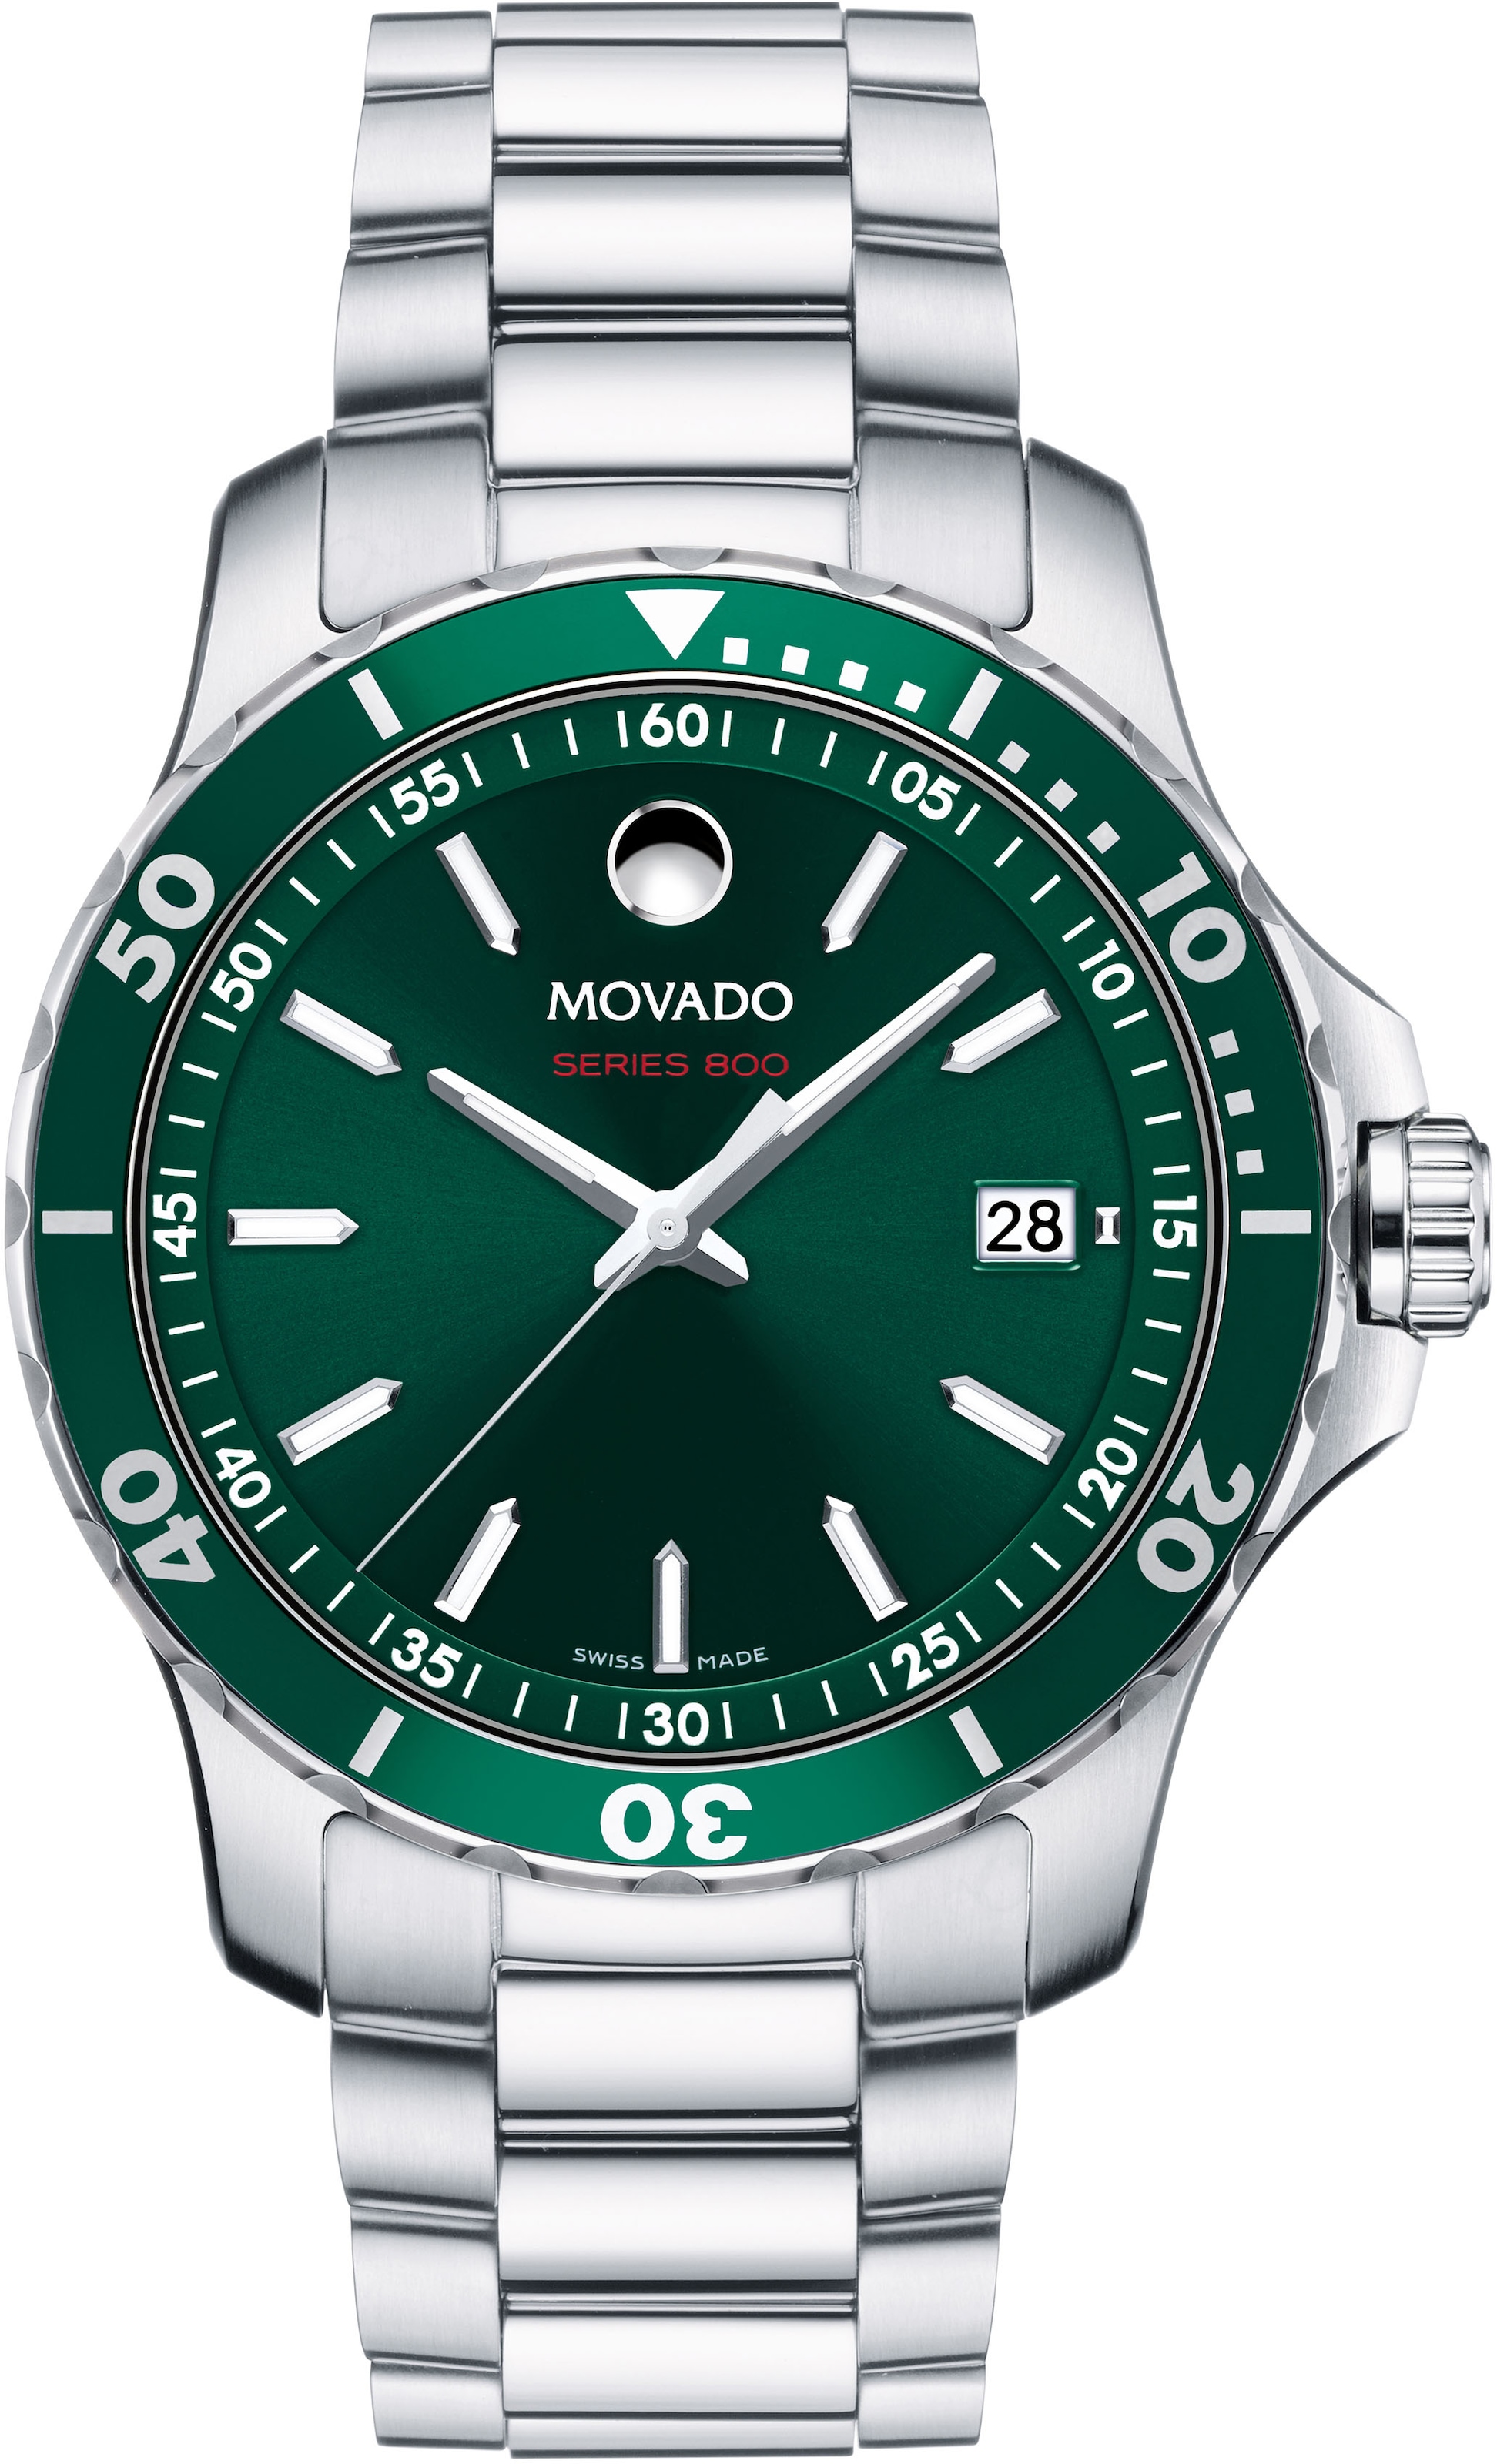 MOVADO Schweizer Uhr »Series auf 800, 2600136« Rechnung kaufen